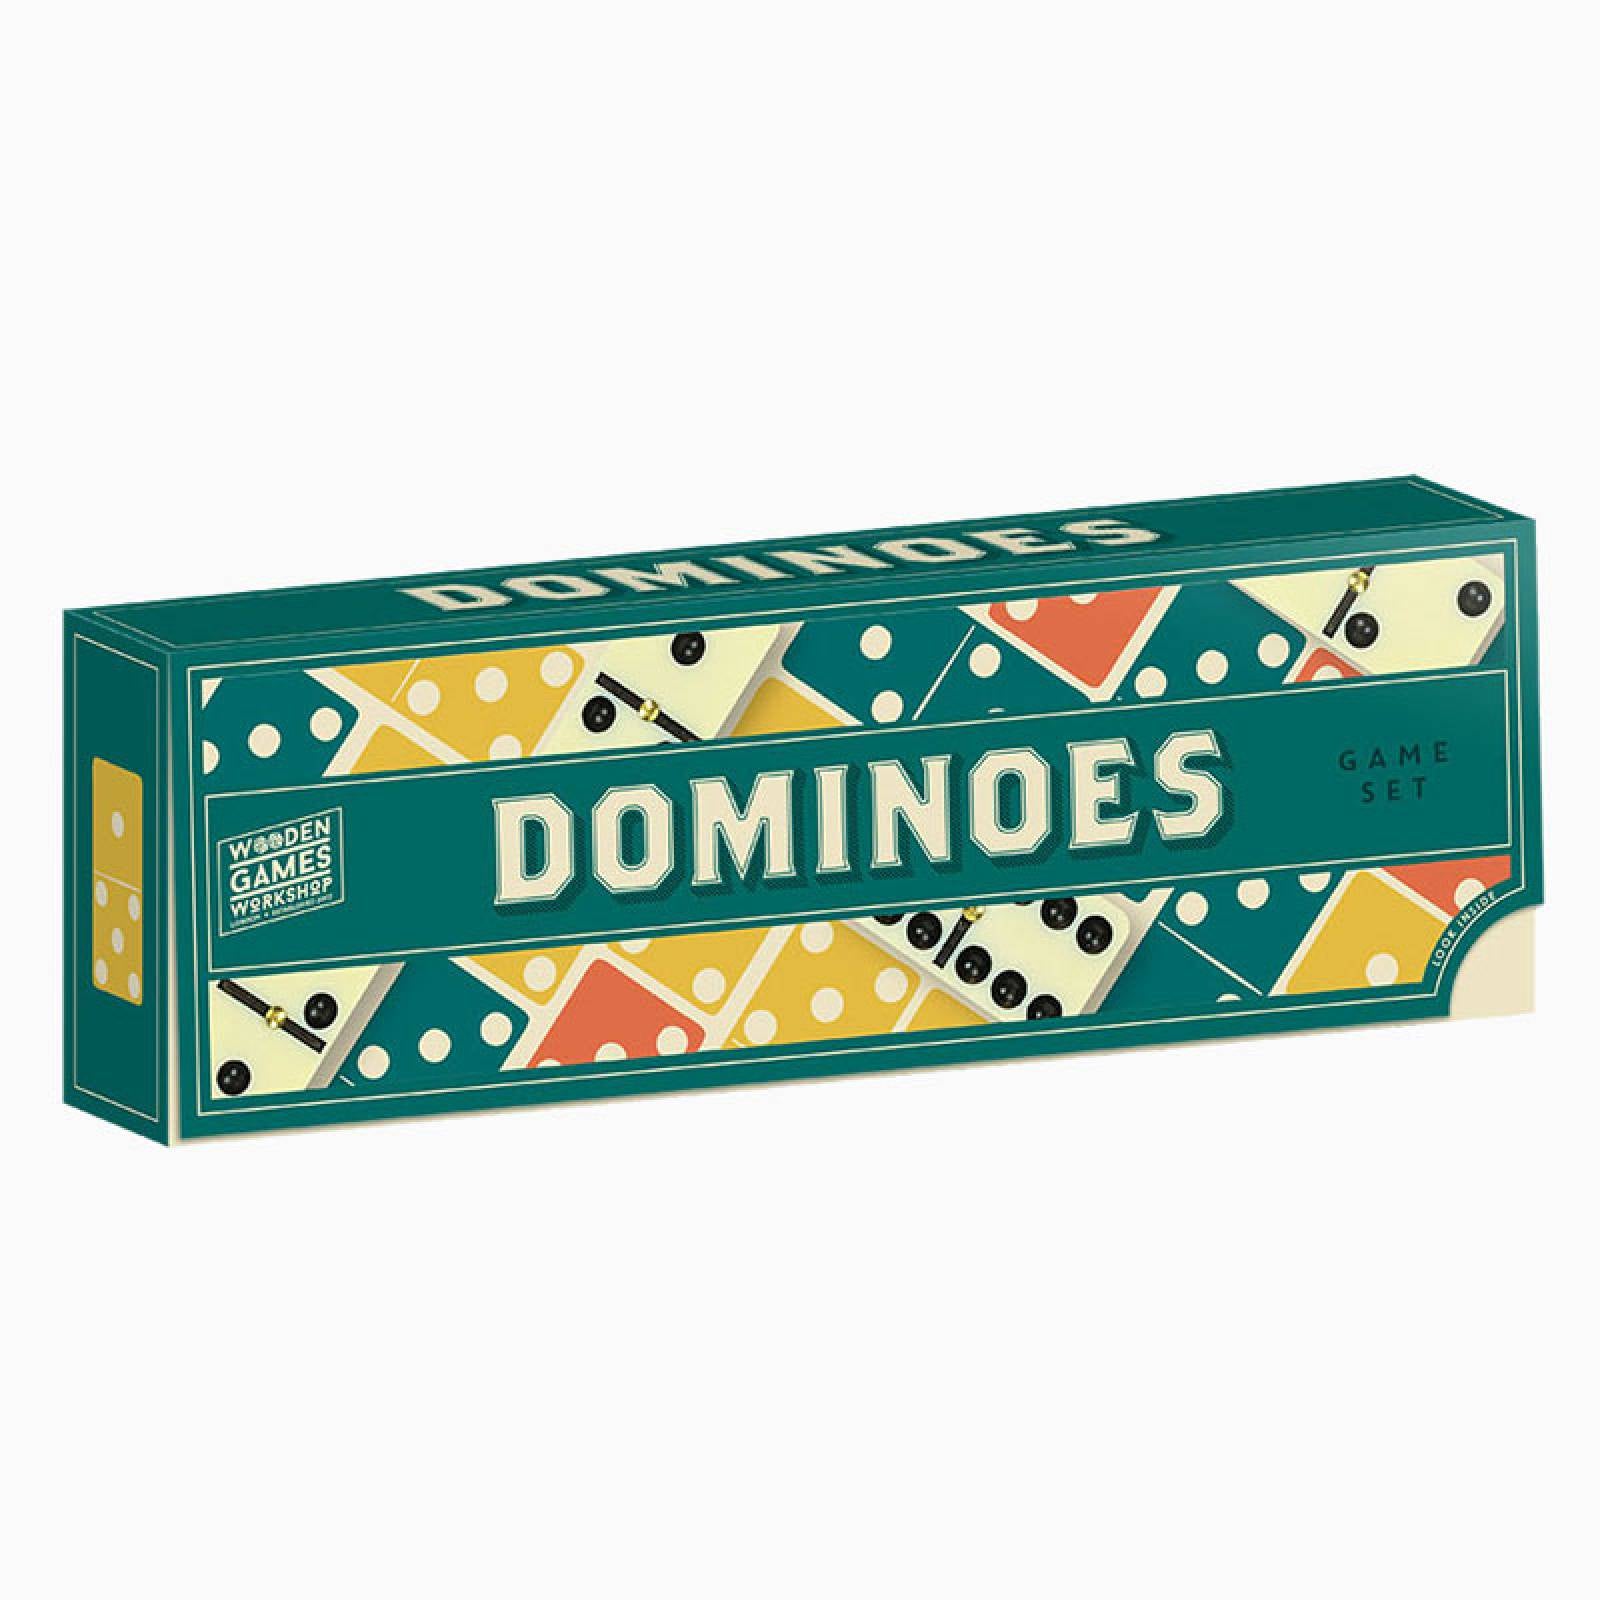 სამაგიდო თამაში დომინო (Dominoes) სამაგიდო თამაში